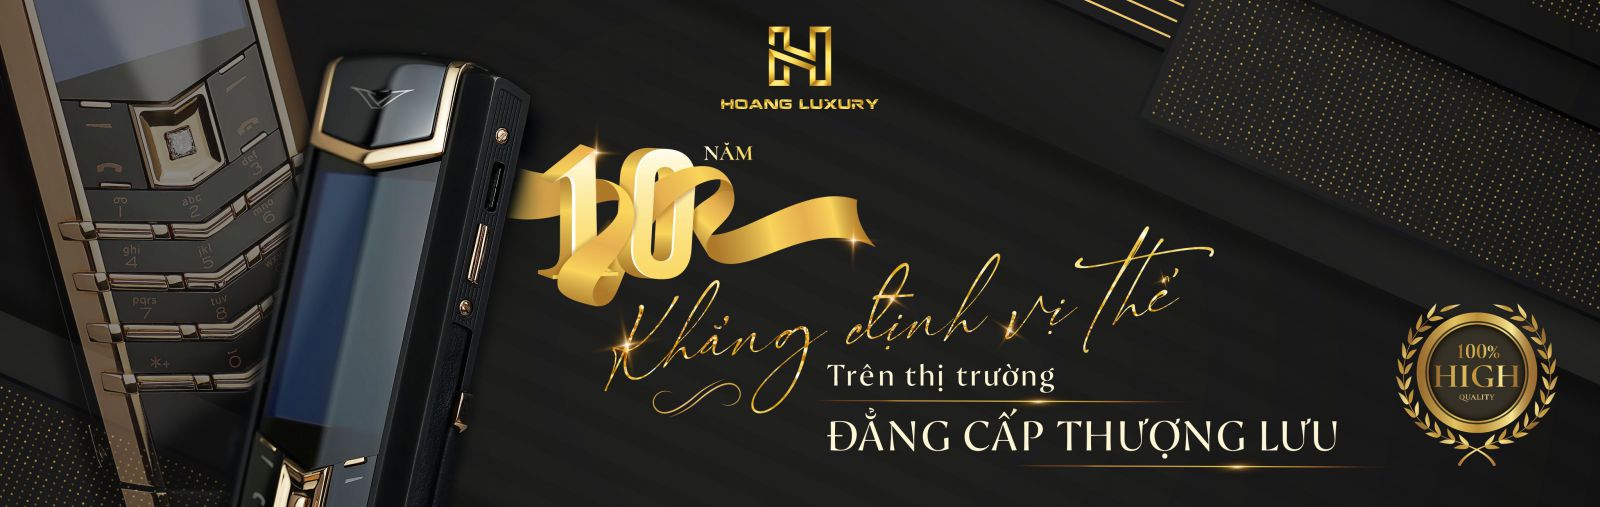 Hoàng Luxury - 10 năm khẳng định vị thế